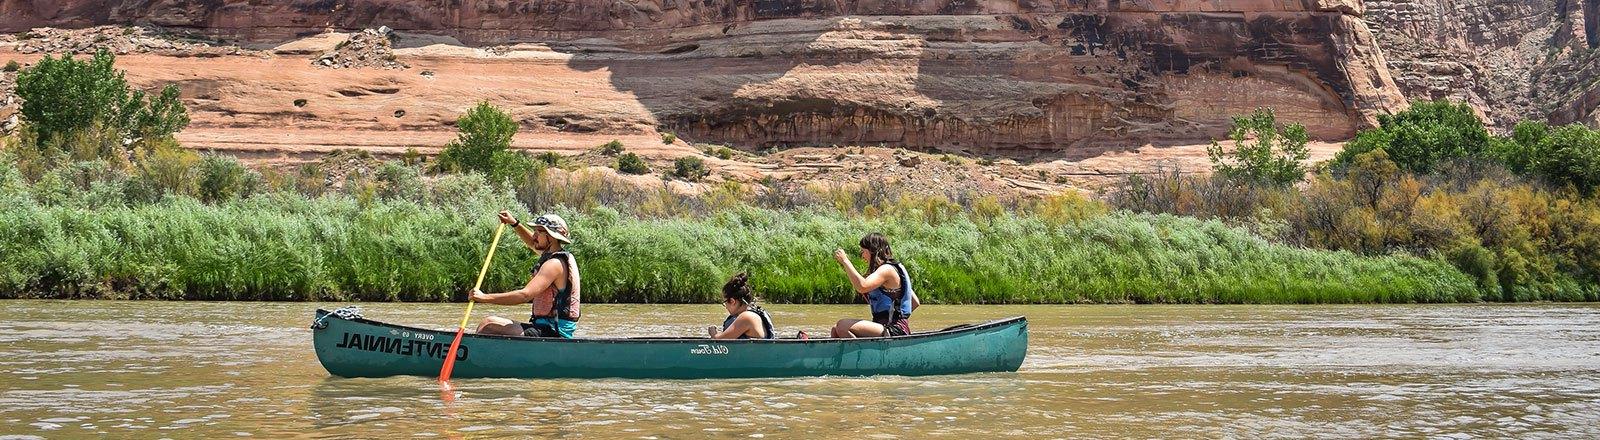 地理位置 students in canoe at the Colorado River